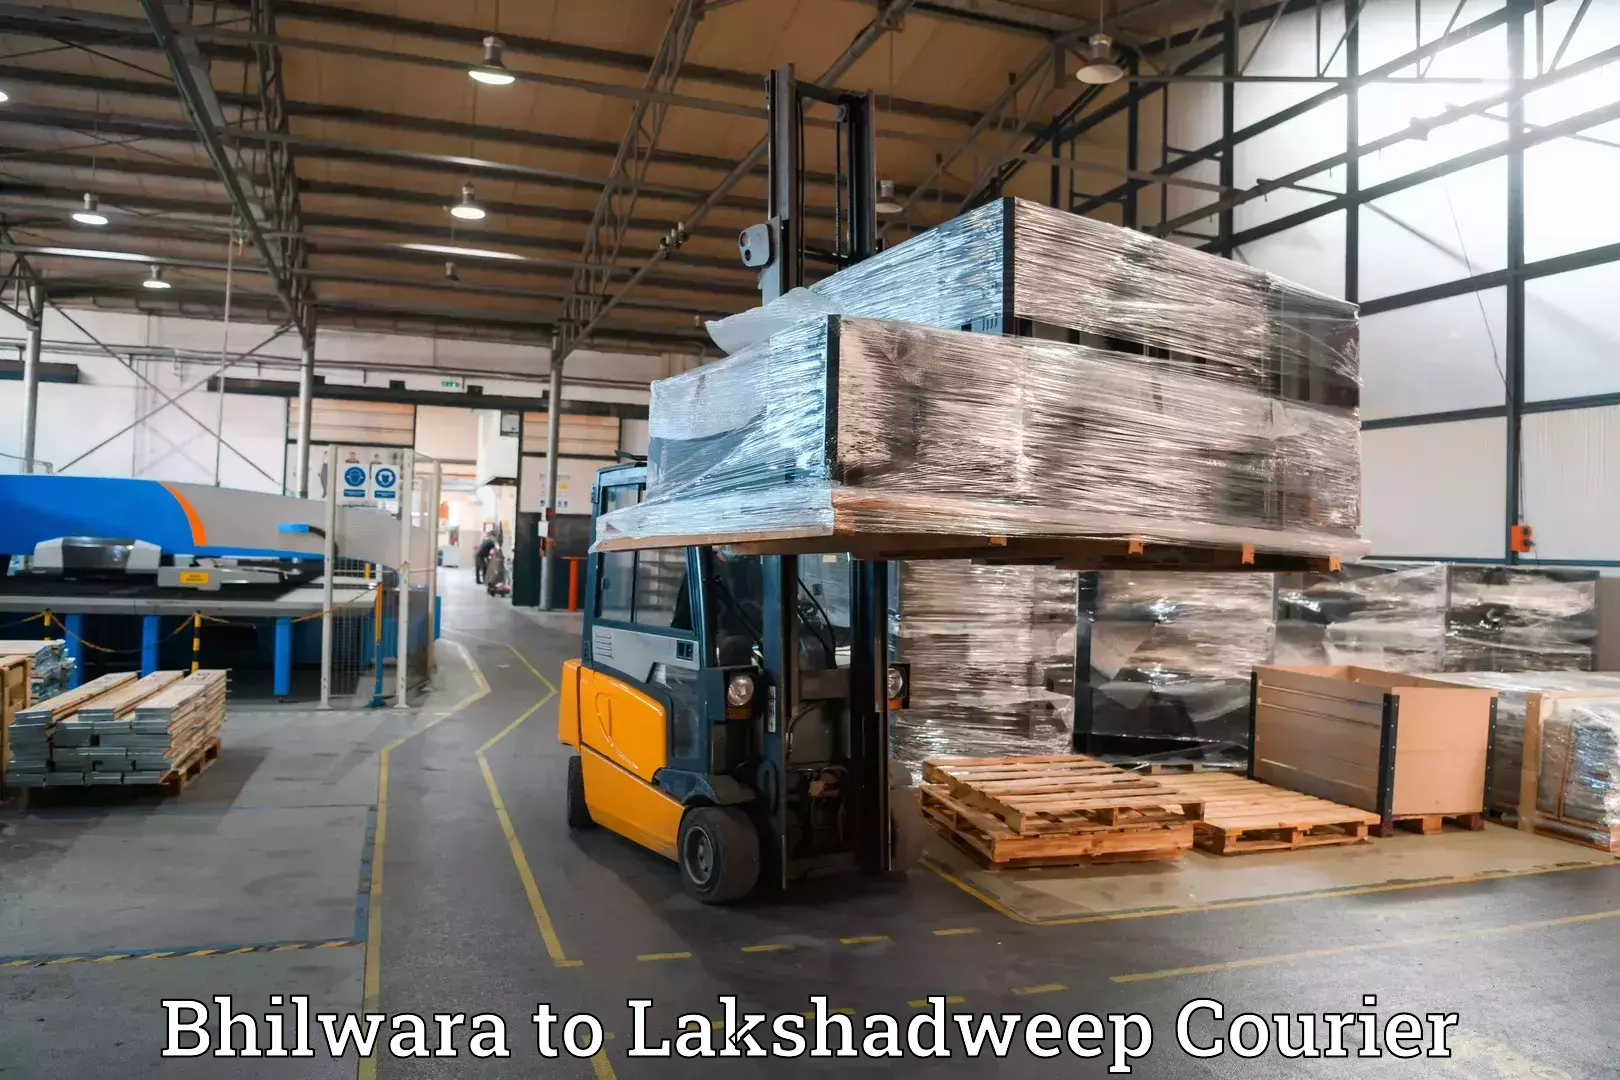 Baggage transport scheduler Bhilwara to Lakshadweep